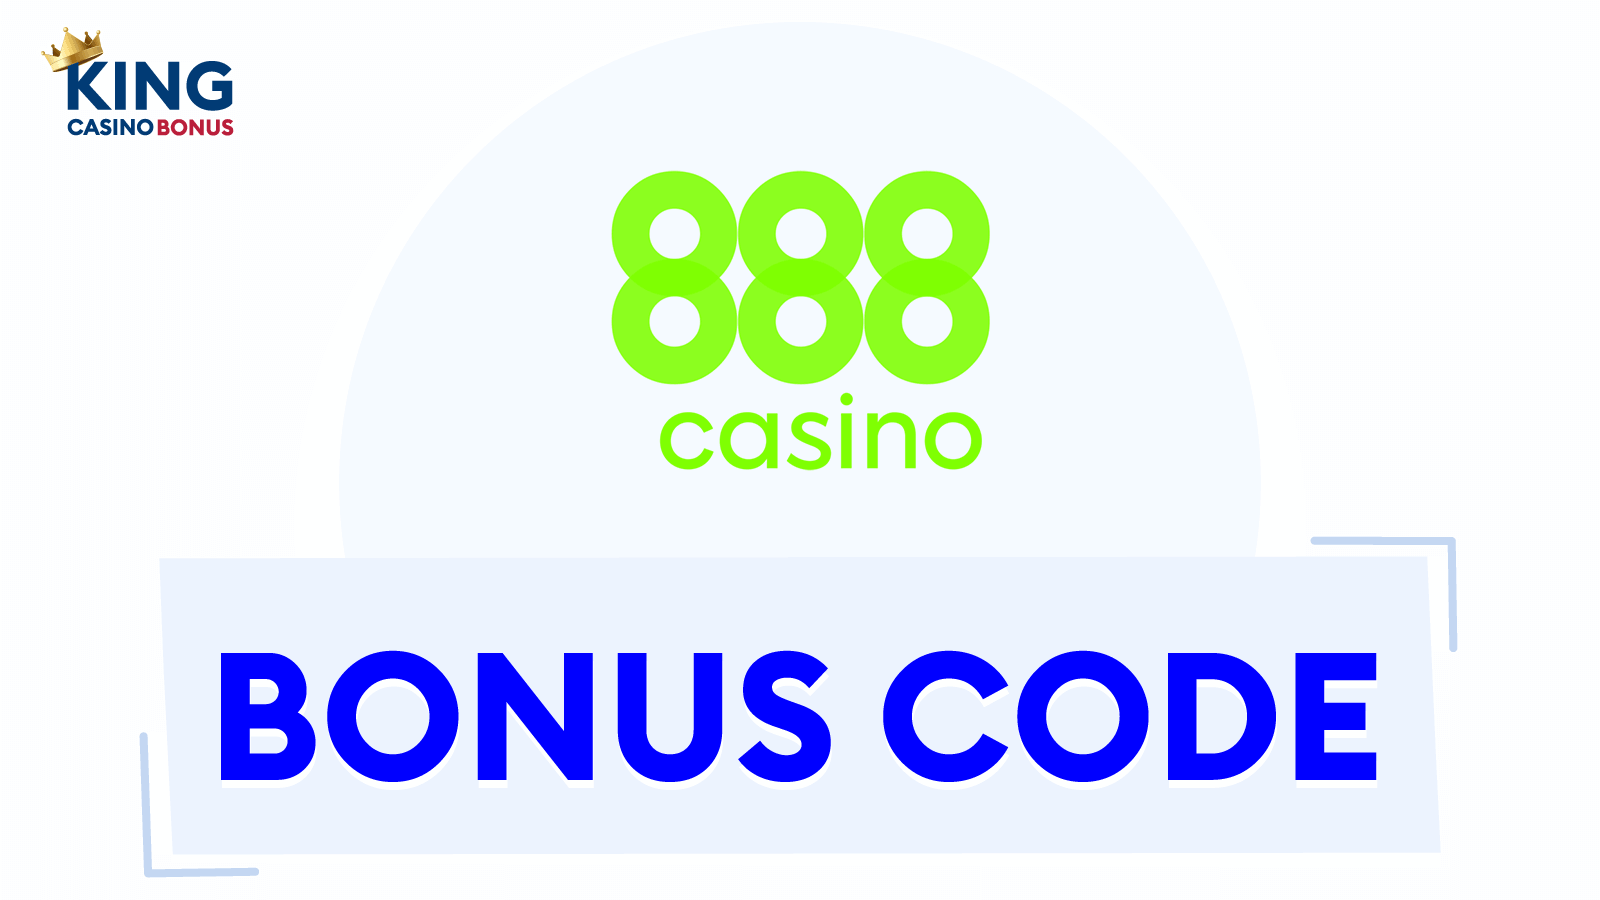 888 Casino Bonus Codes